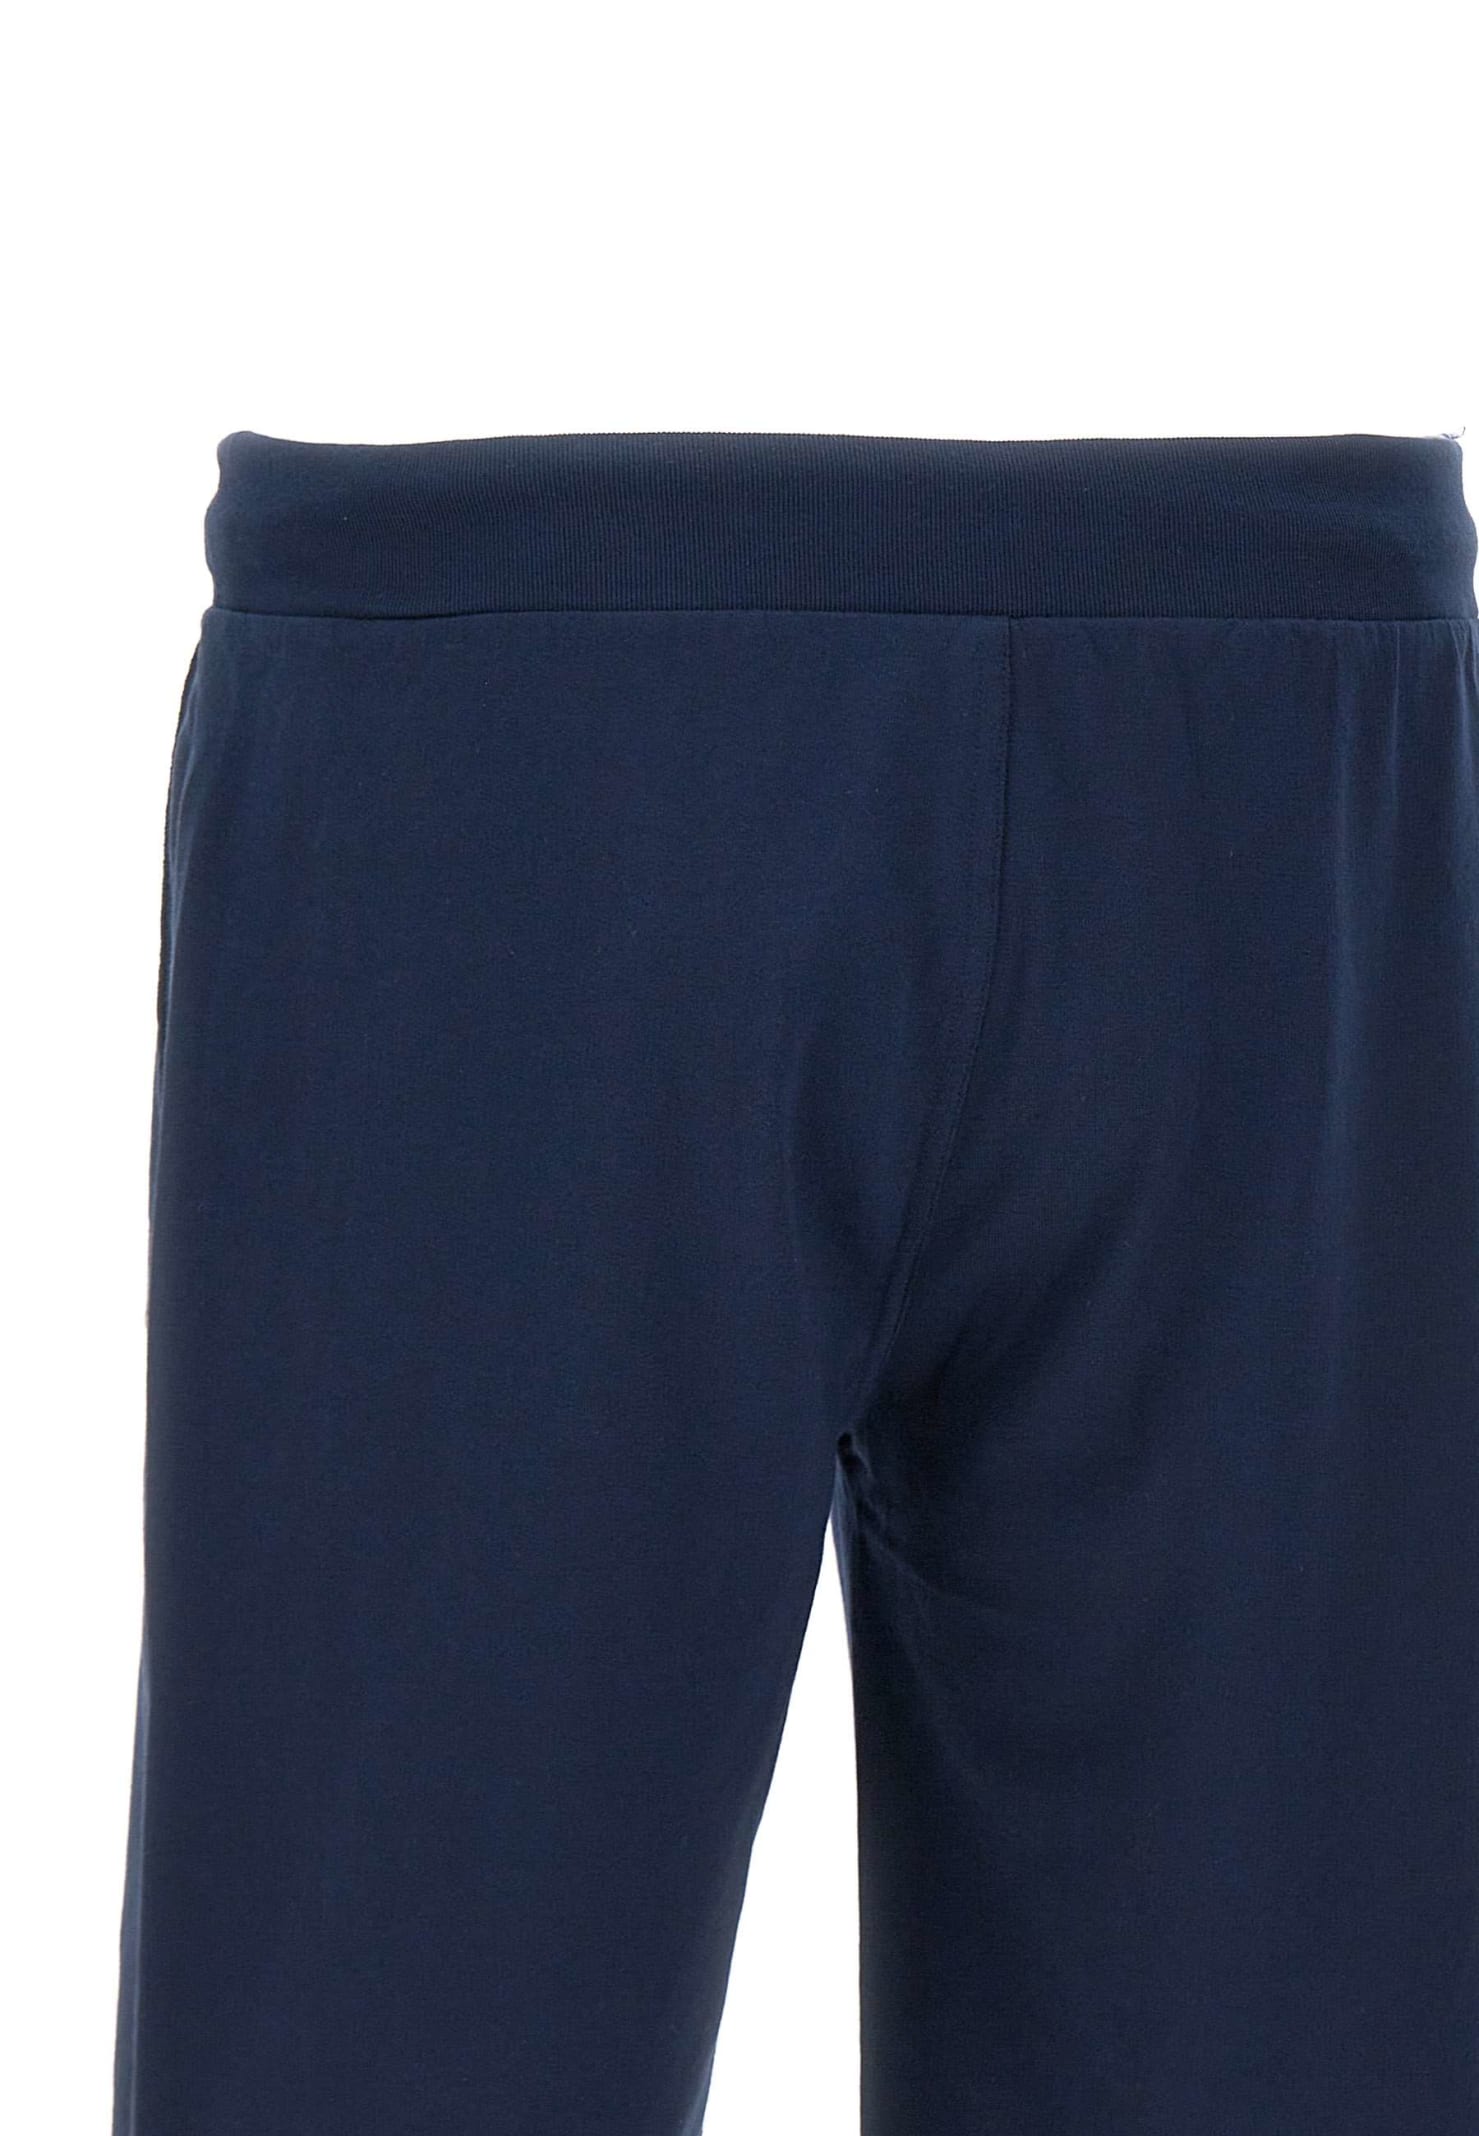 Shop Polo Ralph Lauren Cotton Shorts